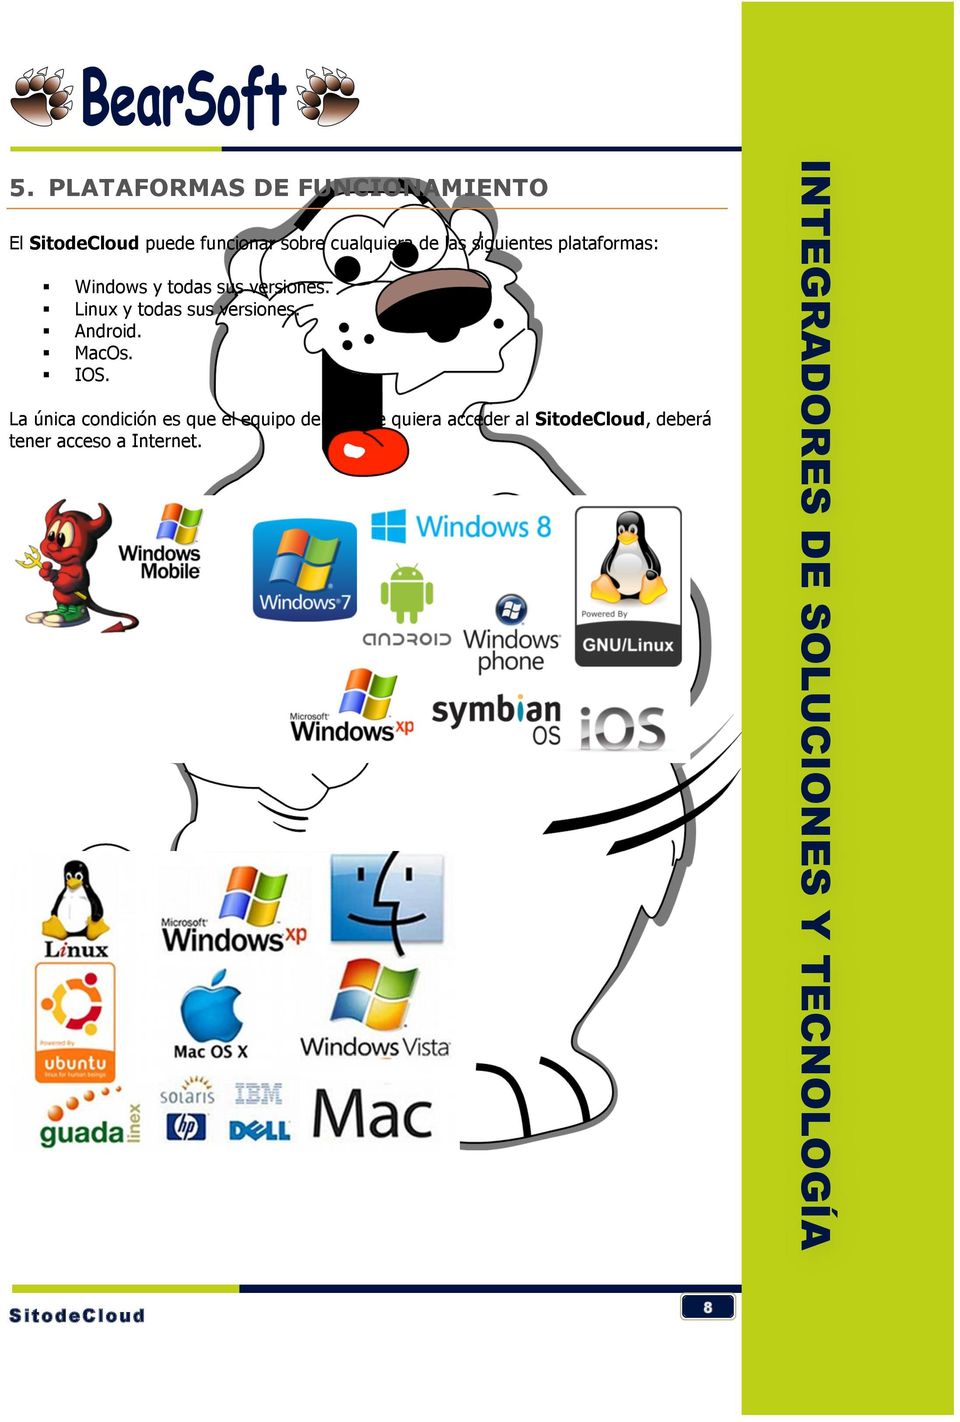 Linux y todas sus versiones. Android. MacOs. IOS.